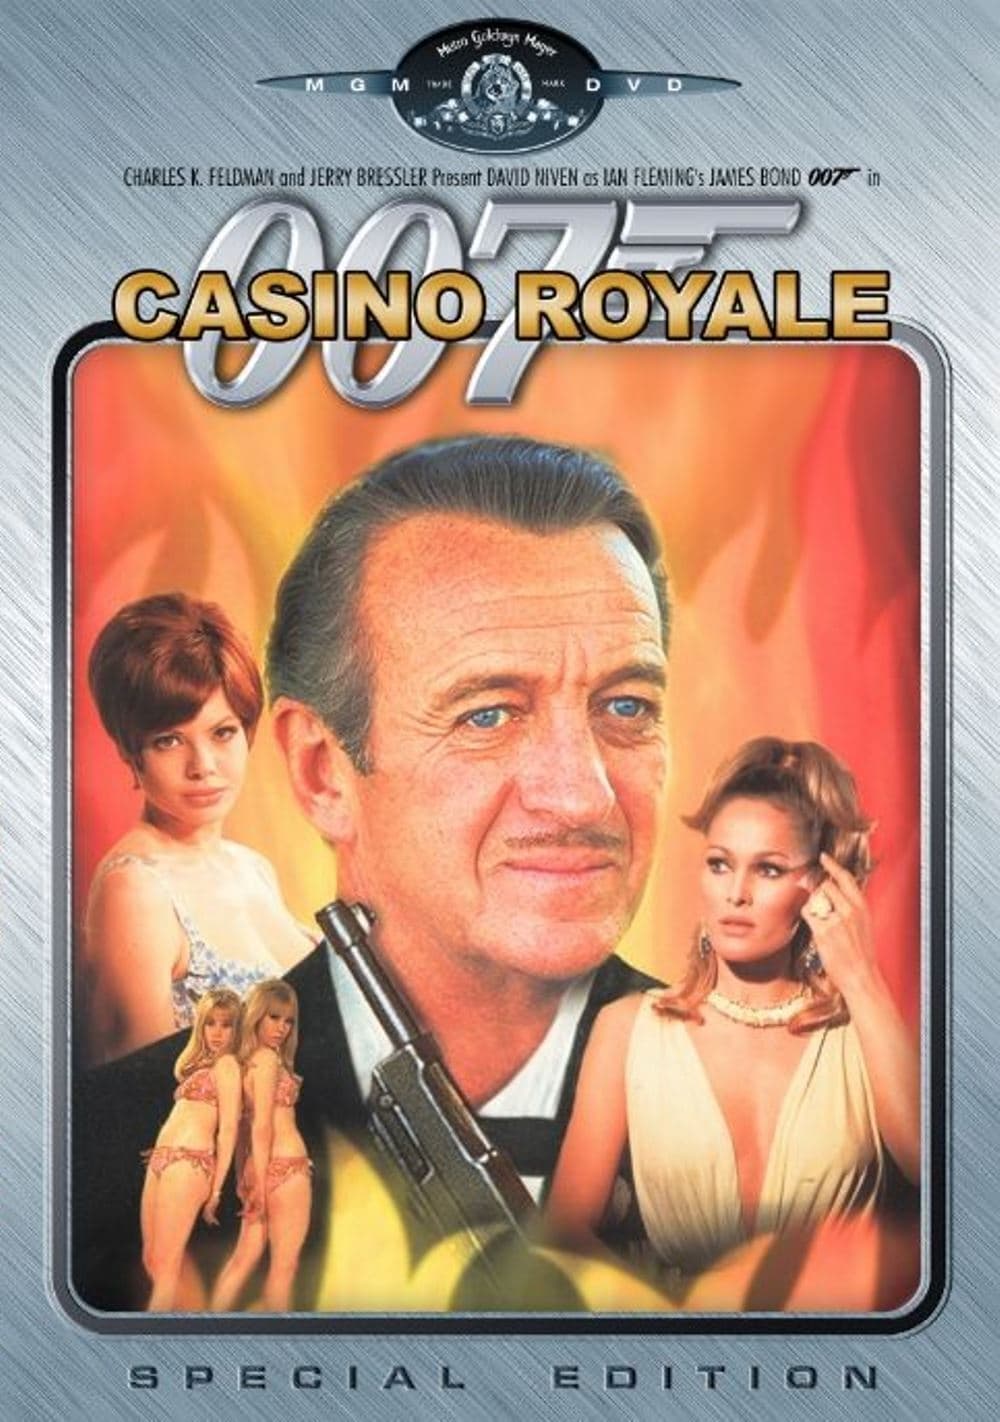 ดูหนังออนไลน์ฟรี Casino Royale 1967 ทีเด็ดเจมส์บอนด์ 007